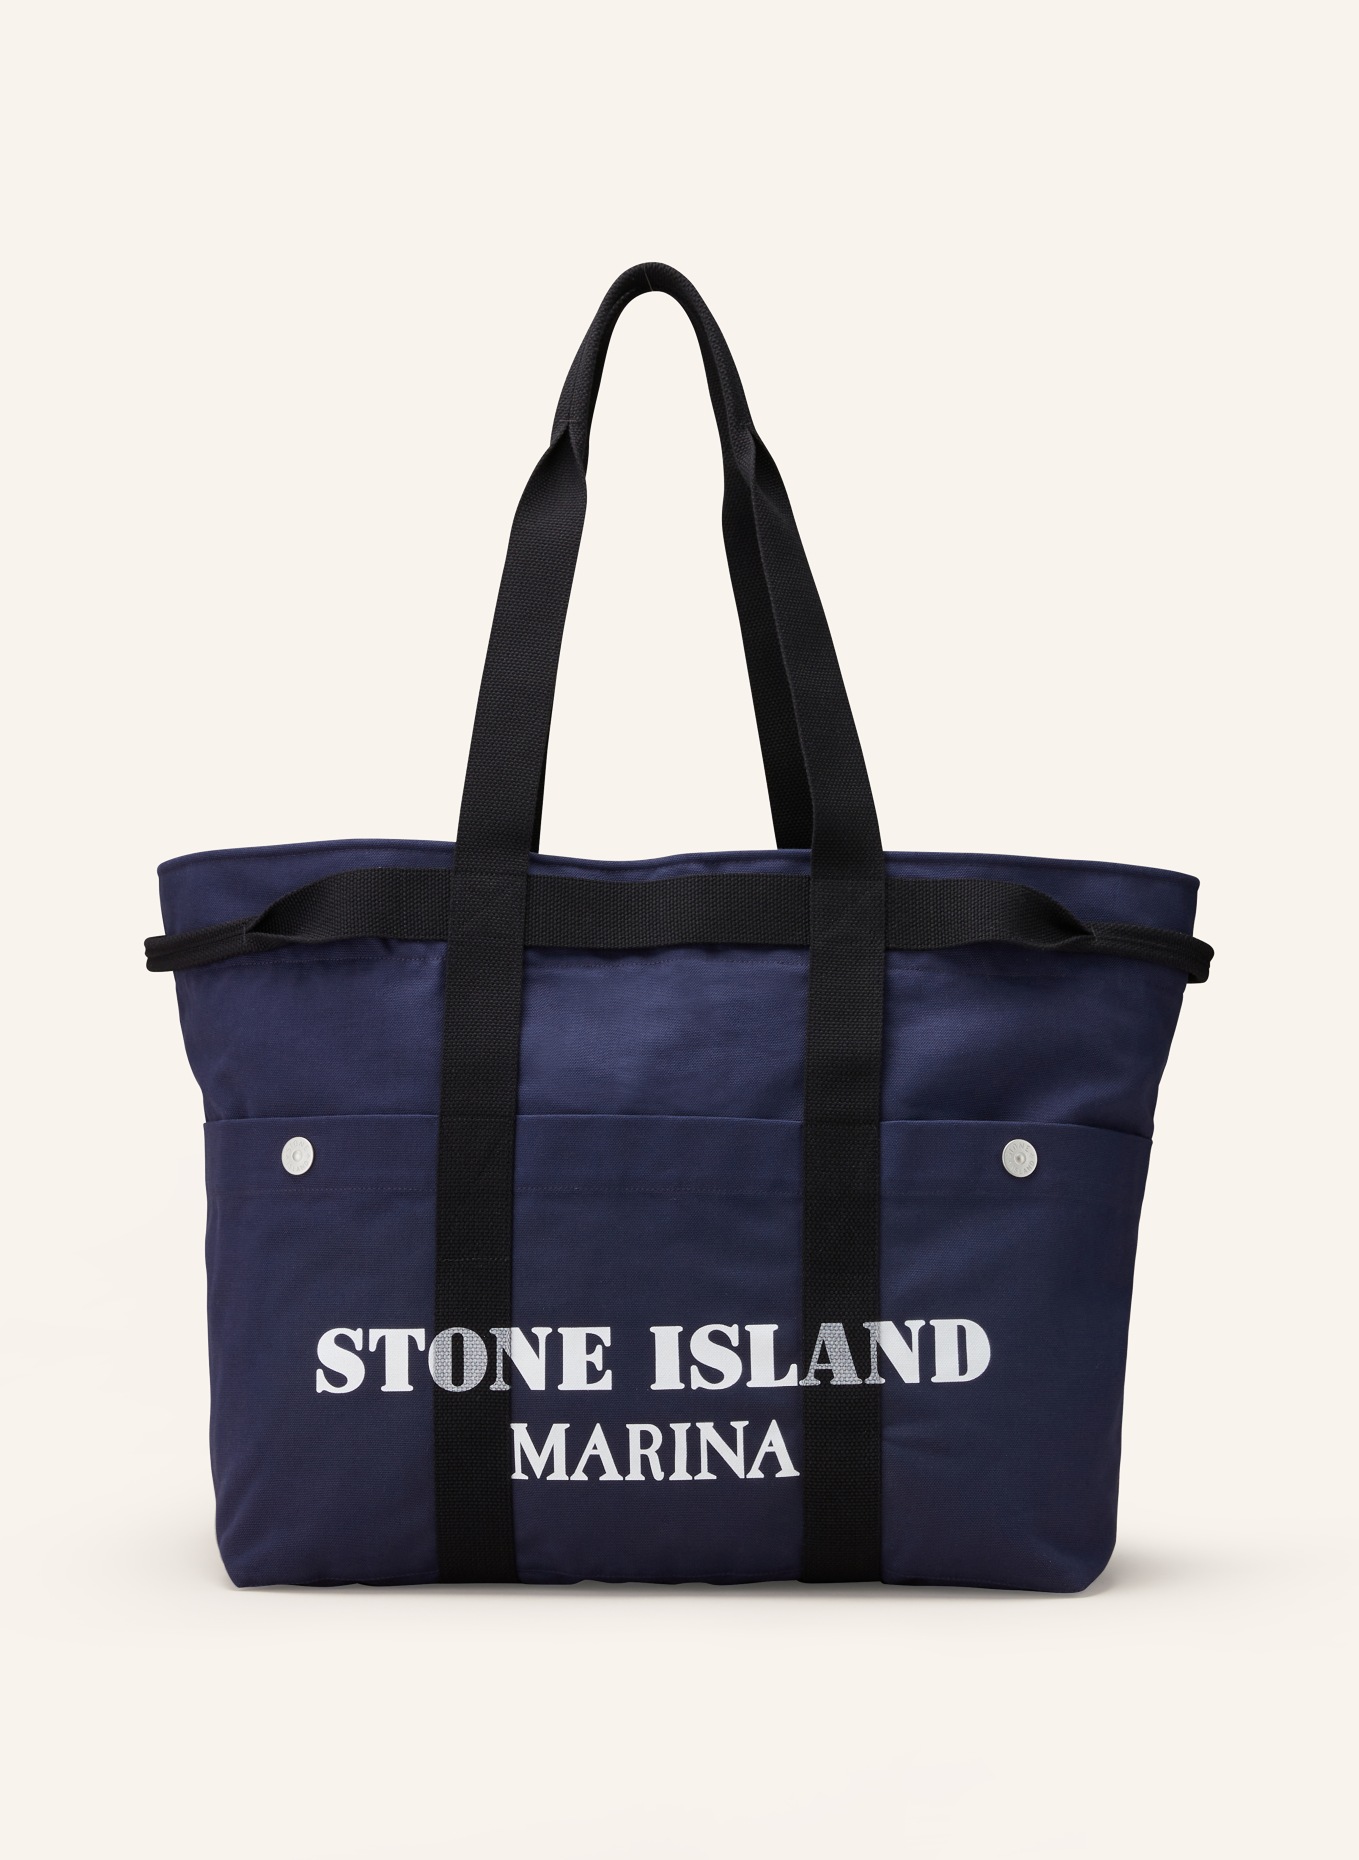 STONE ISLAND Strandtasche MARINA, Farbe: DUNKELBLAU/ SCHWARZ/ WEISS (Bild 1)